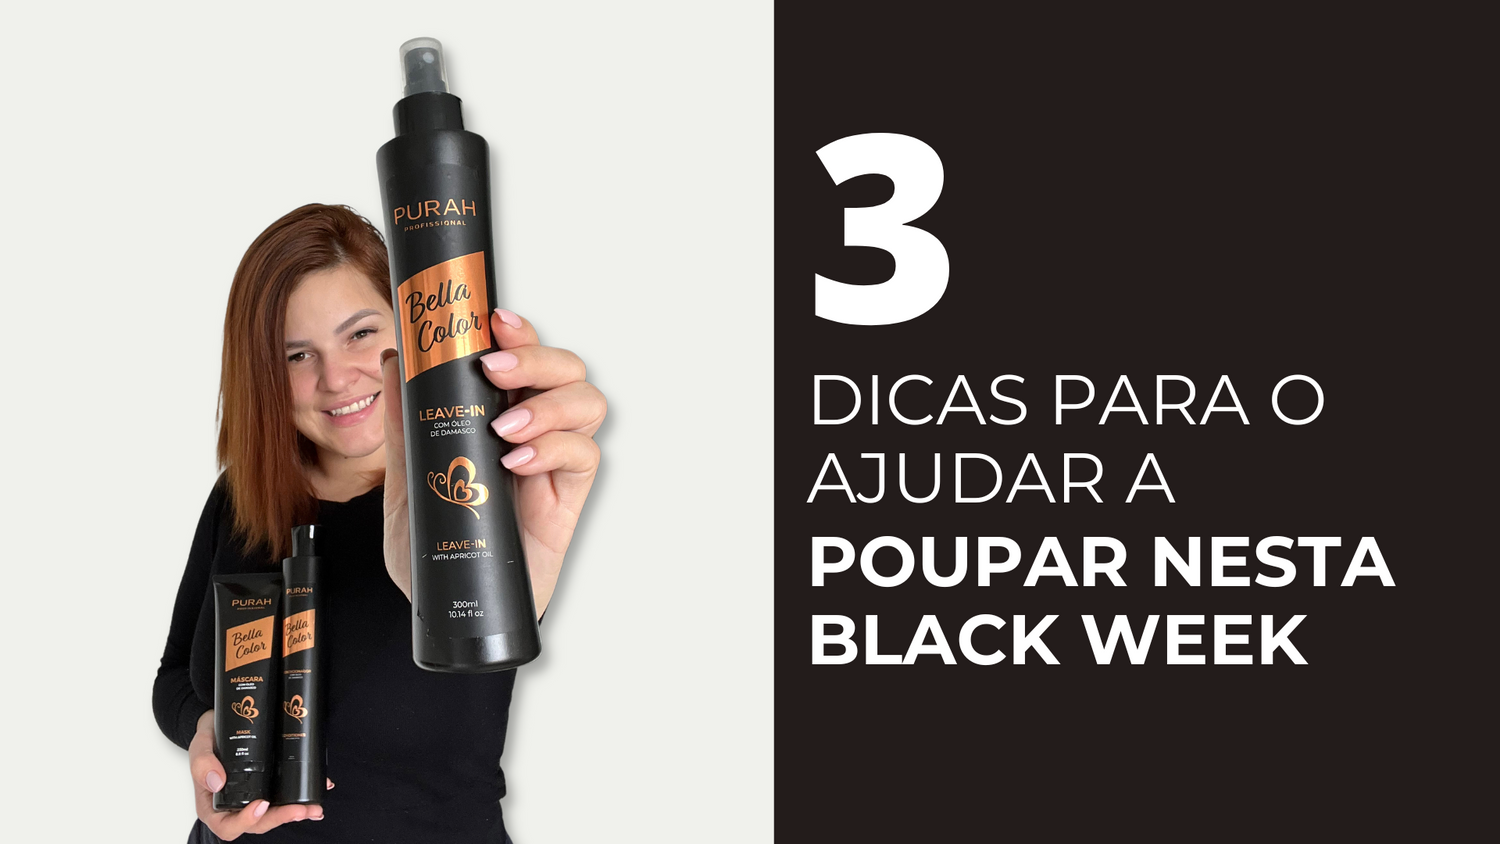 3 DICAS PARA O AJUDAR A POUPAR NESTA BLACK WEEK - Loja Purah beauty